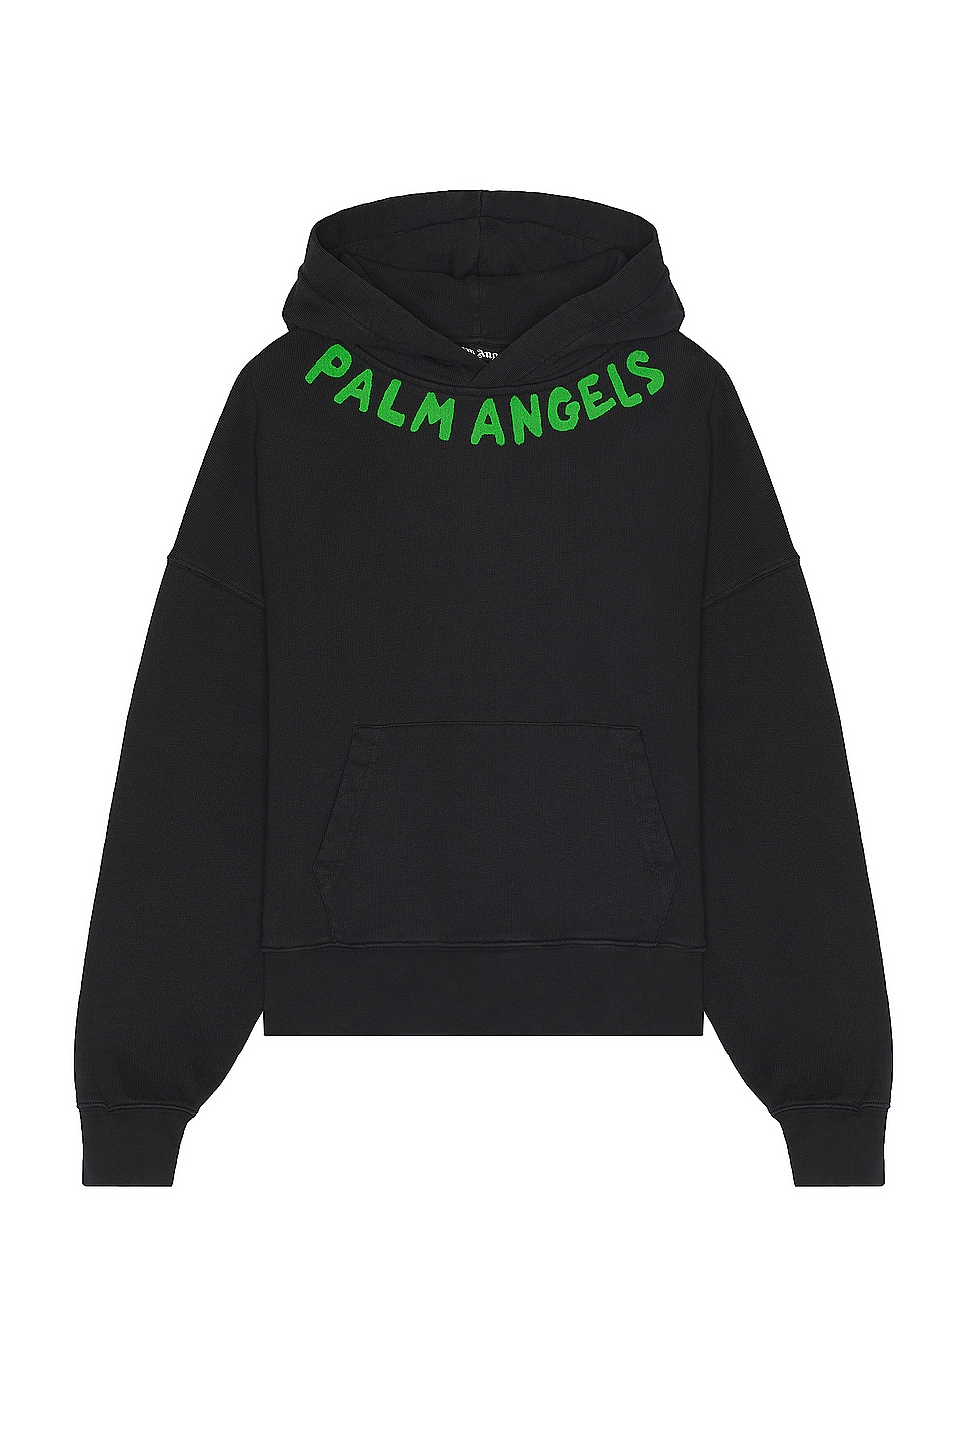 Image 1 of Palm Angels Seasonal Logo Hoodie in Black & Green